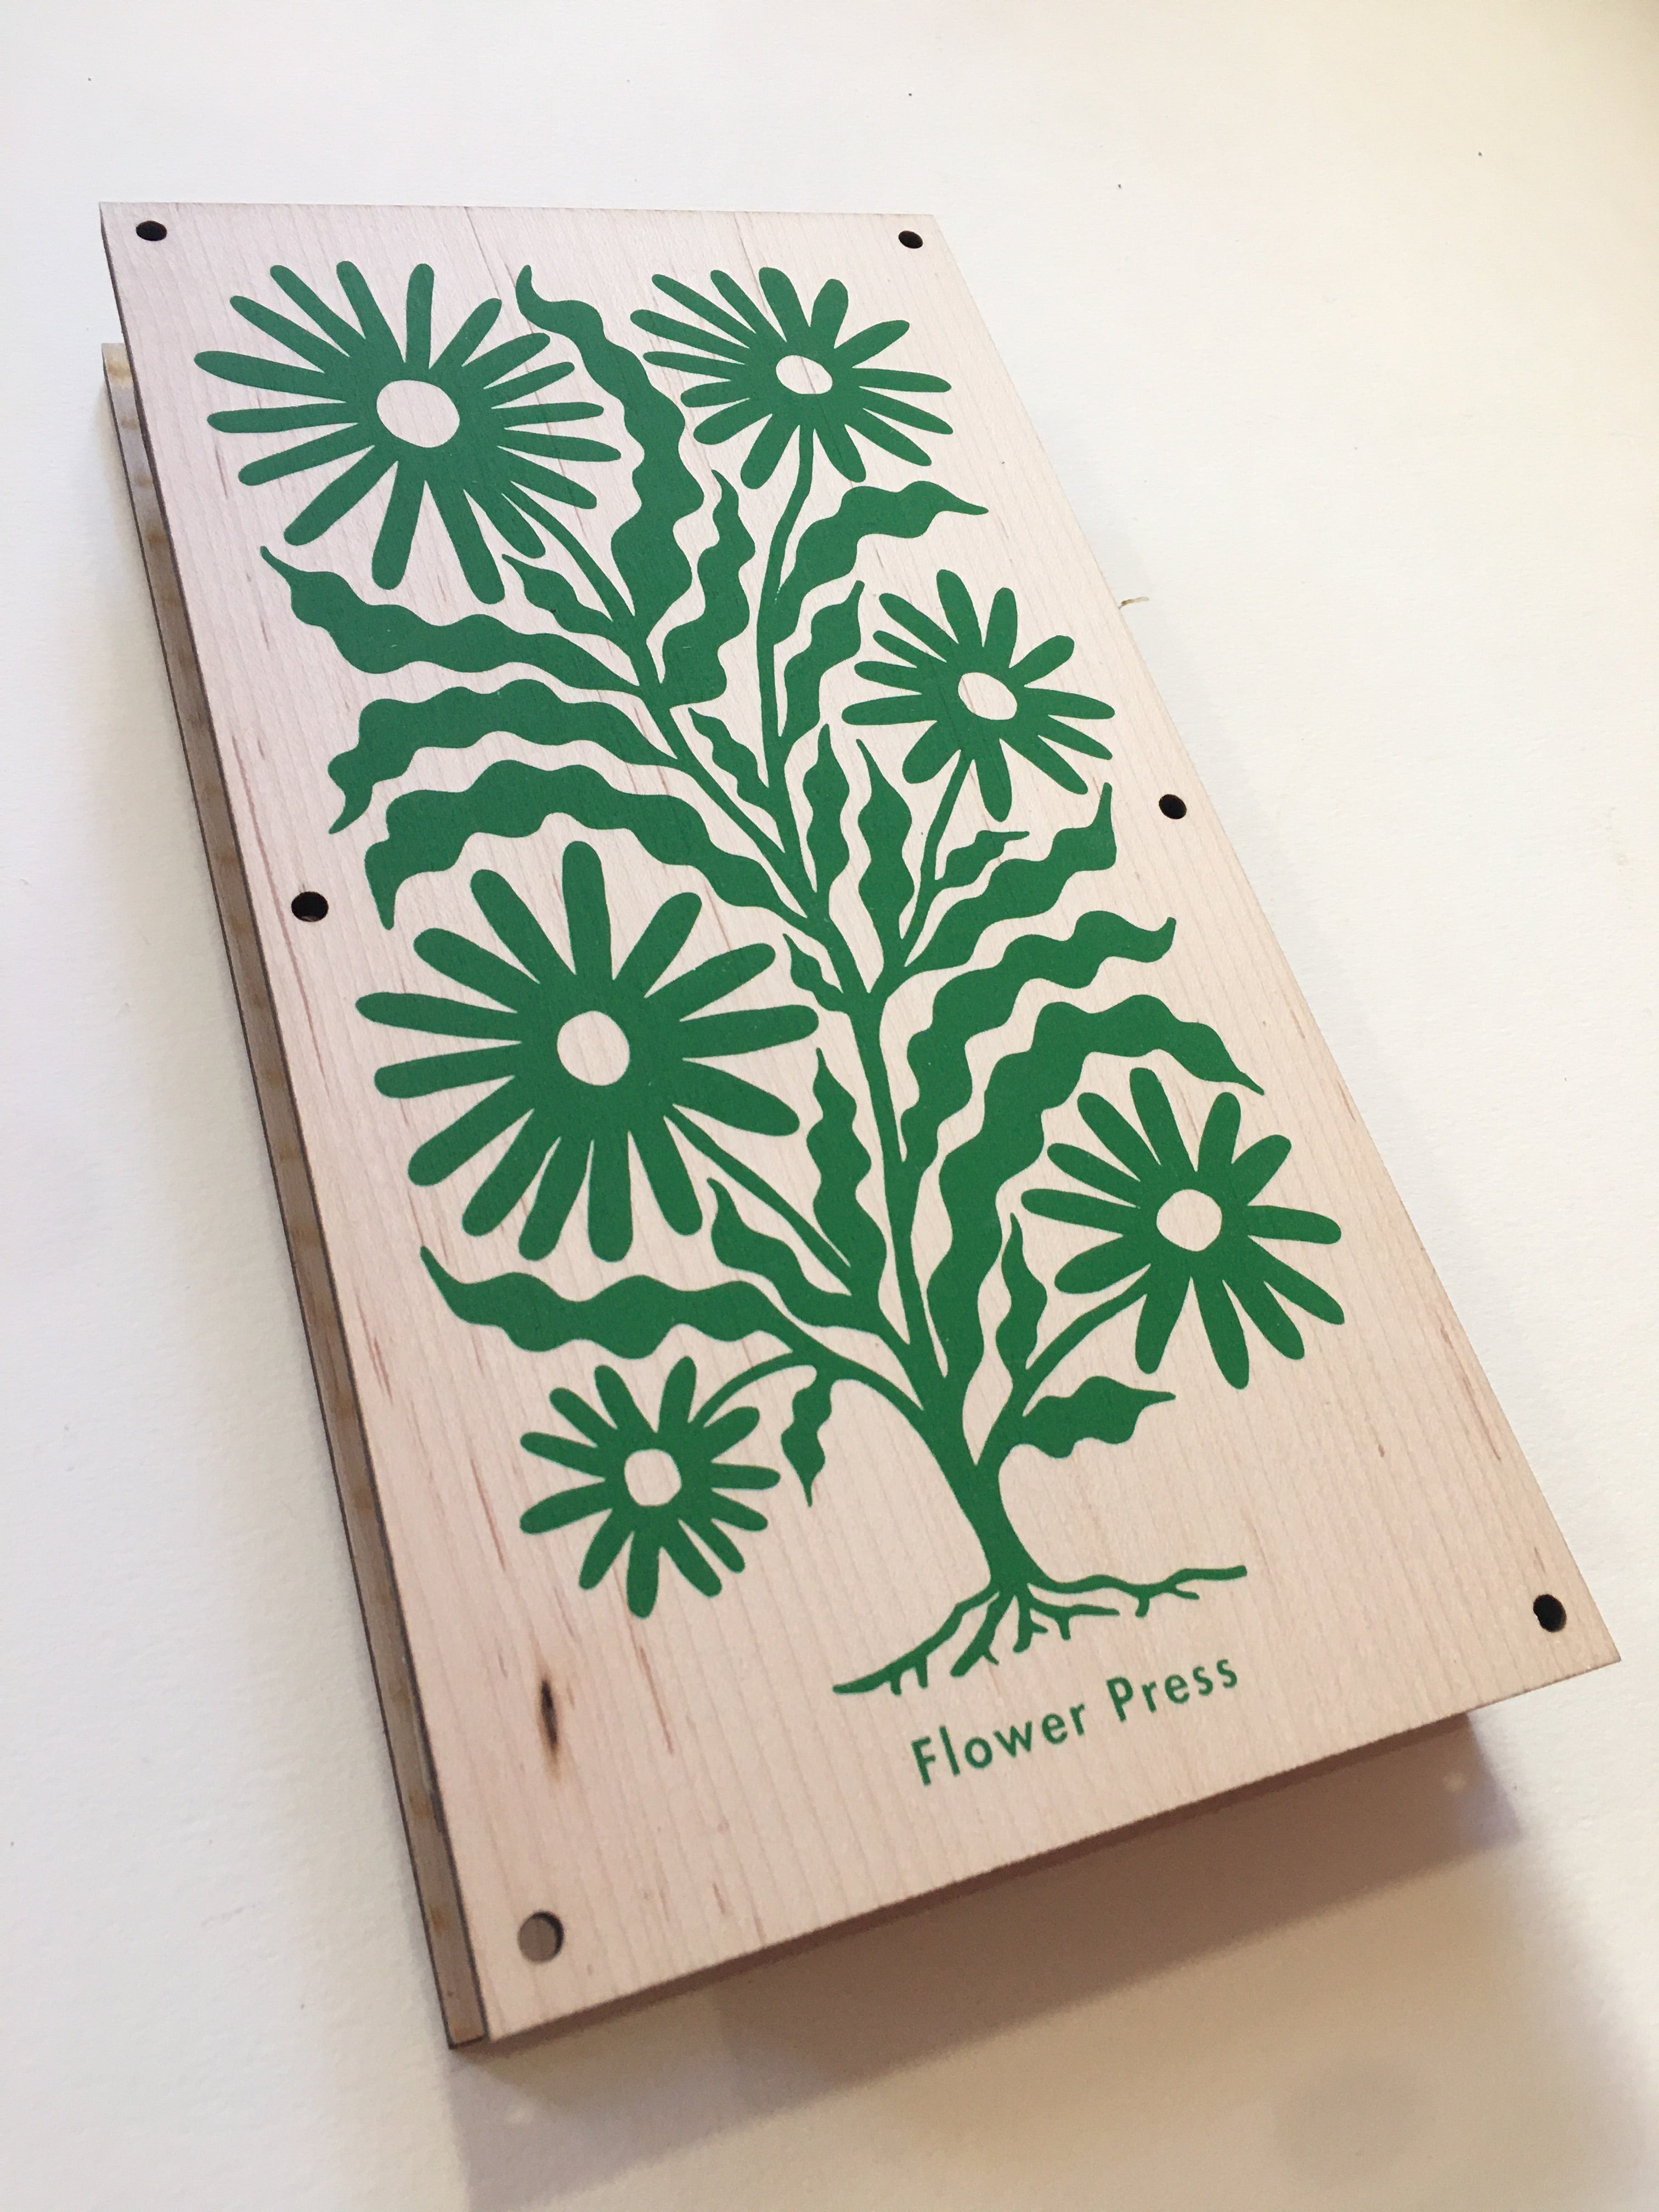 Large Wooden Flower Press Kit - Create Botanical Art & Hand-Made Cards -  Little Garden Shop | Claudia de Yong Designs